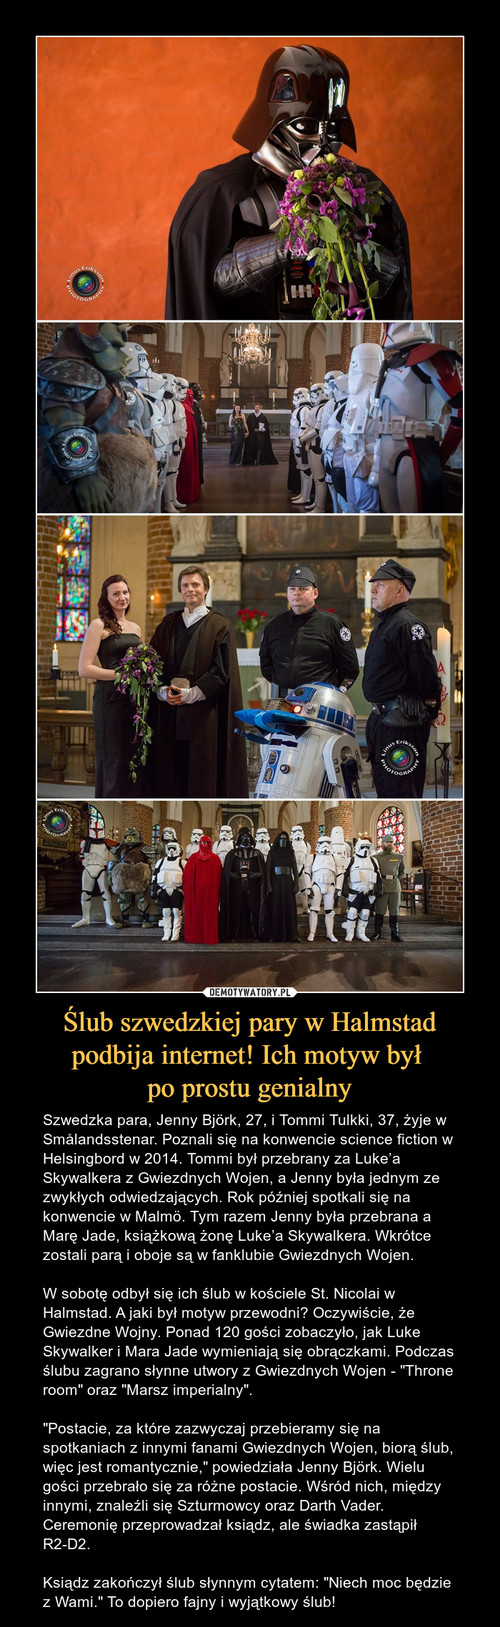 Ślub szwedzkiej pary w Halmstad podbija internet! Ich motyw był 
po prostu genialny